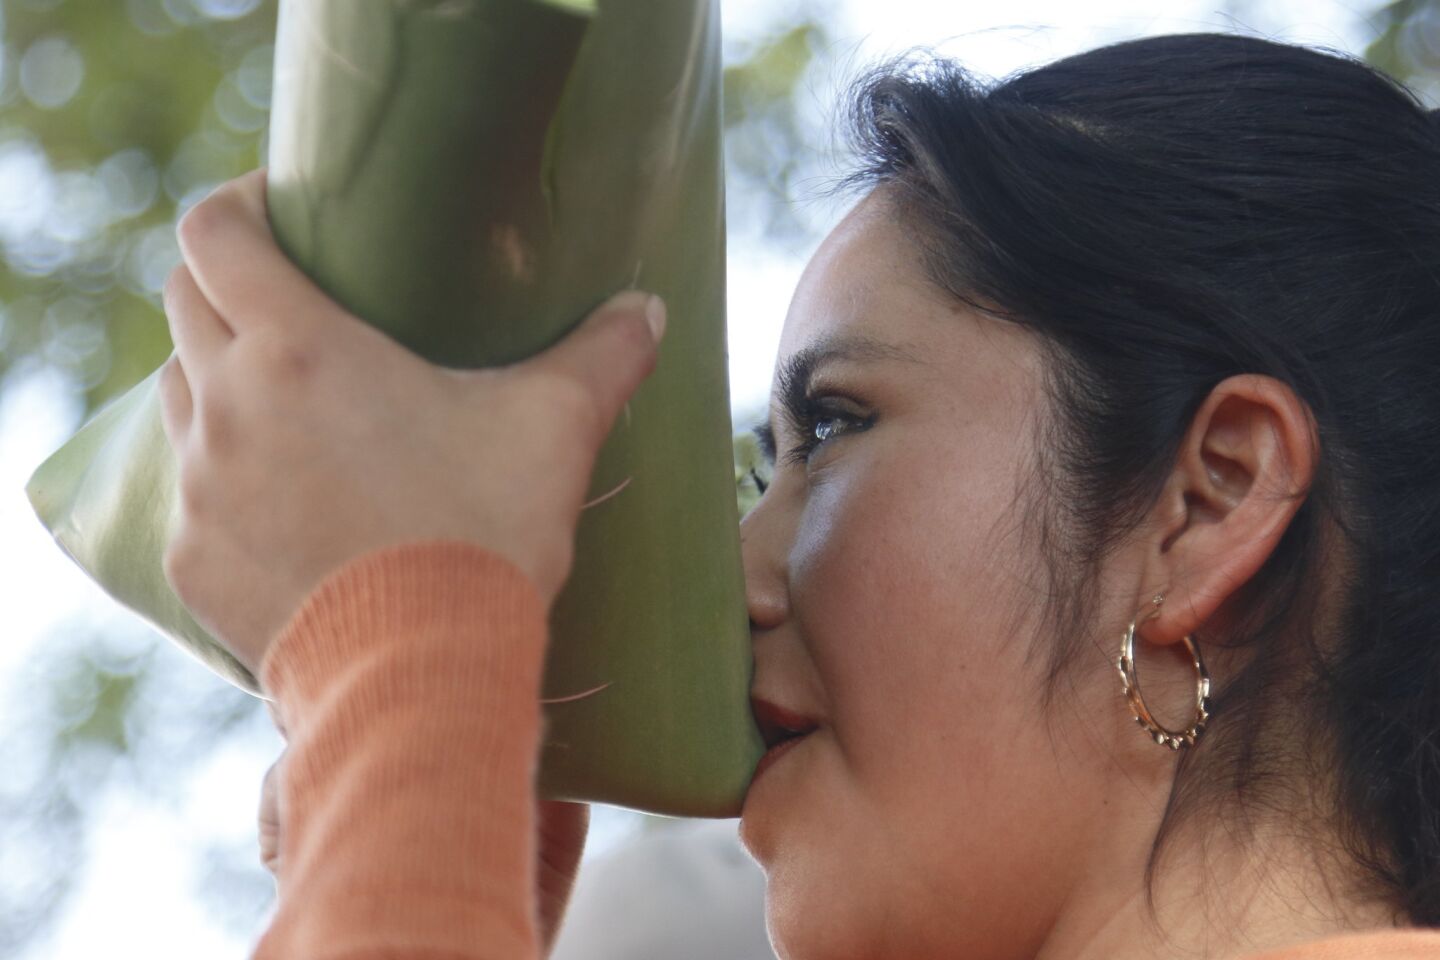 Una mujer bebe pulque en una penca de maguey, en la celebración de la Tlahuanca, fiesta de la embriaguez o "borrachera espiritual". Este preparado milenario que se elabora a partir de la fermentación del maguey.